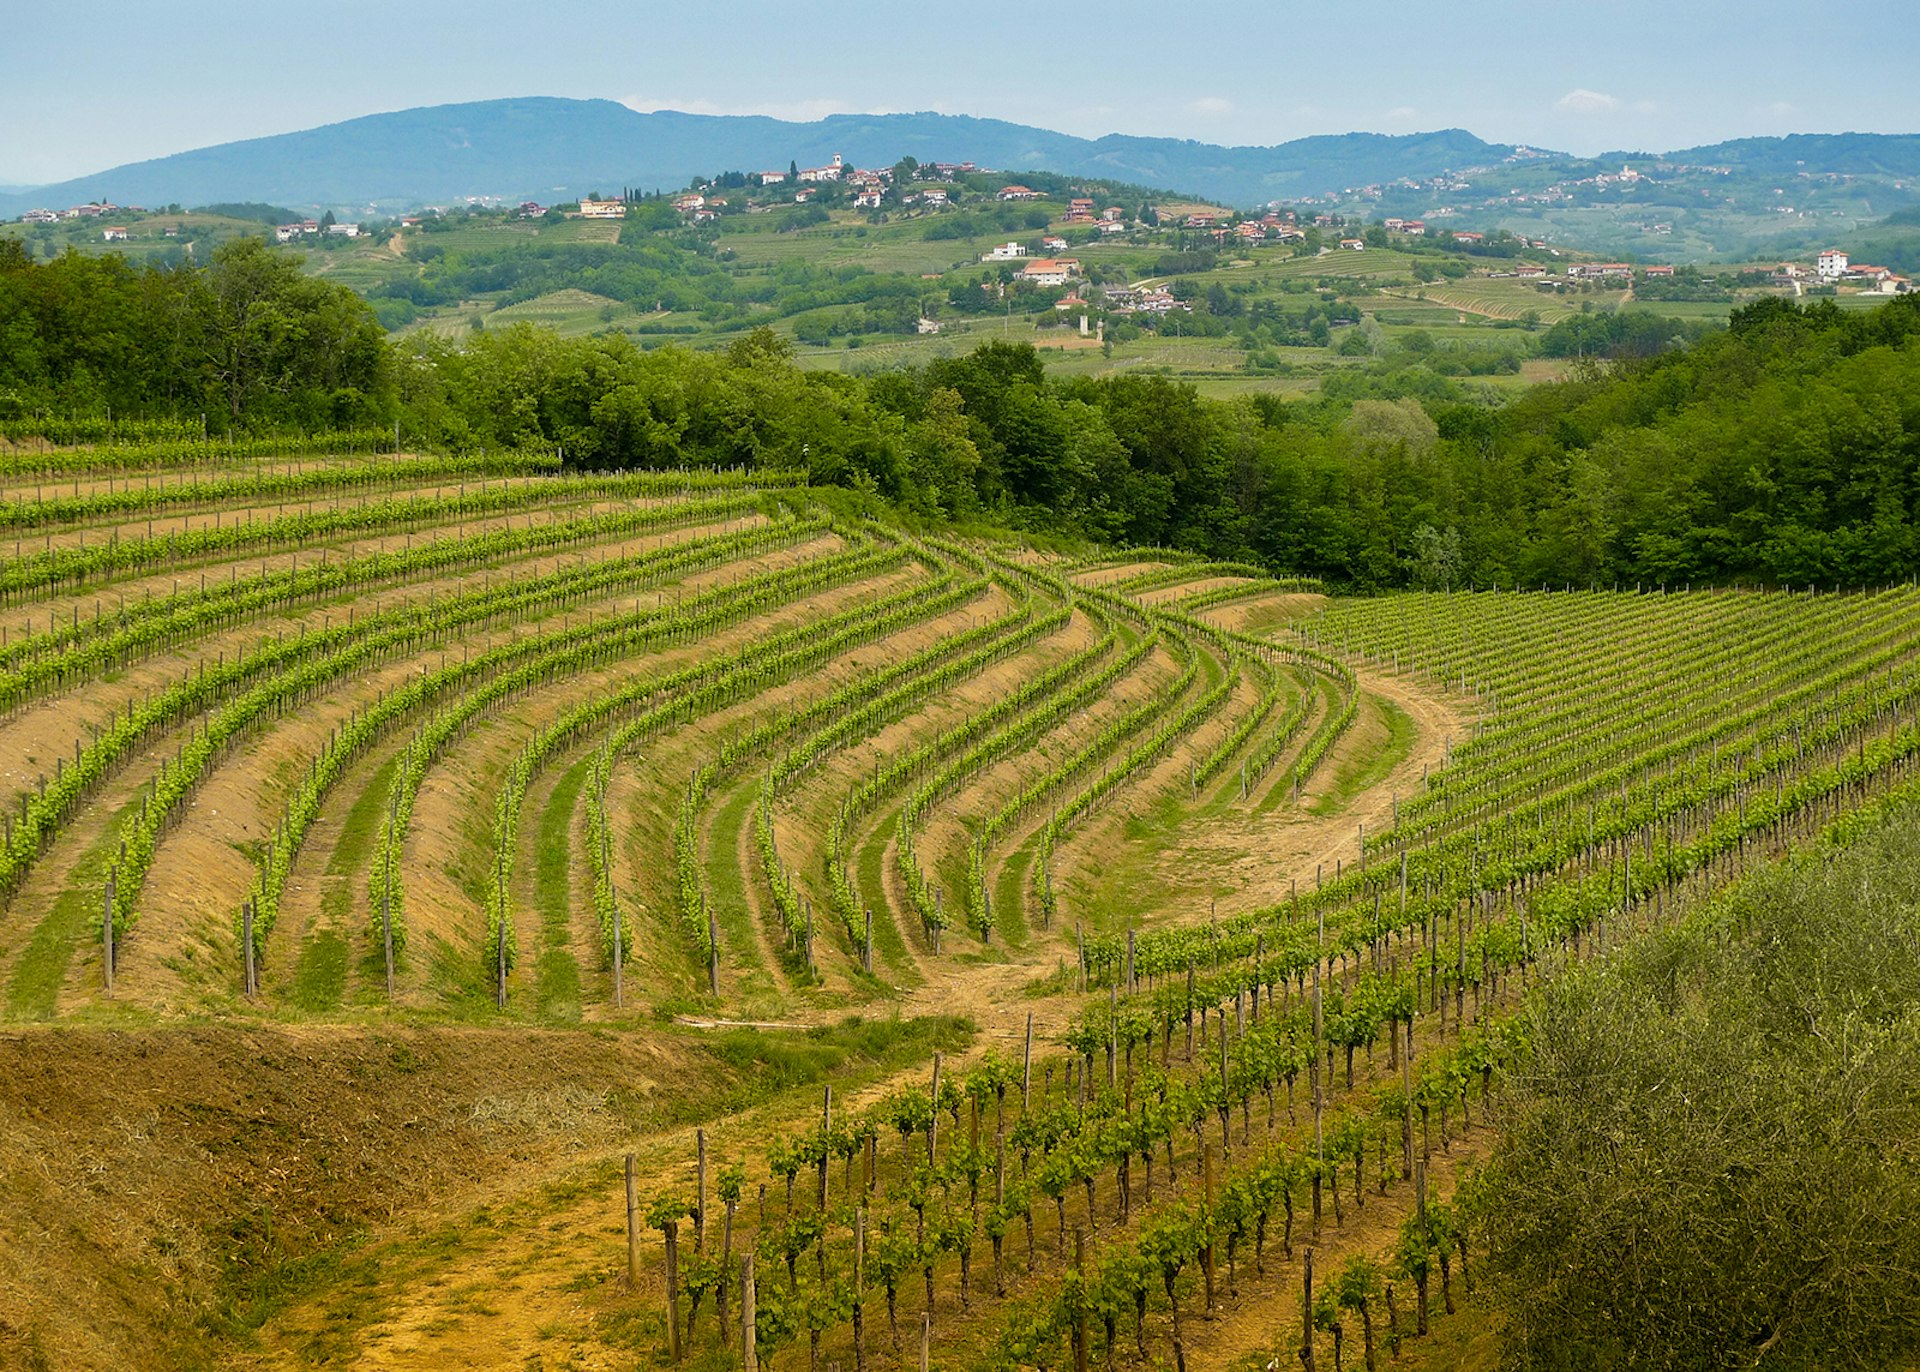 Vineyards on the hills in Collio area near Cormons, Friuli © Mario Savoia / Shutterstock